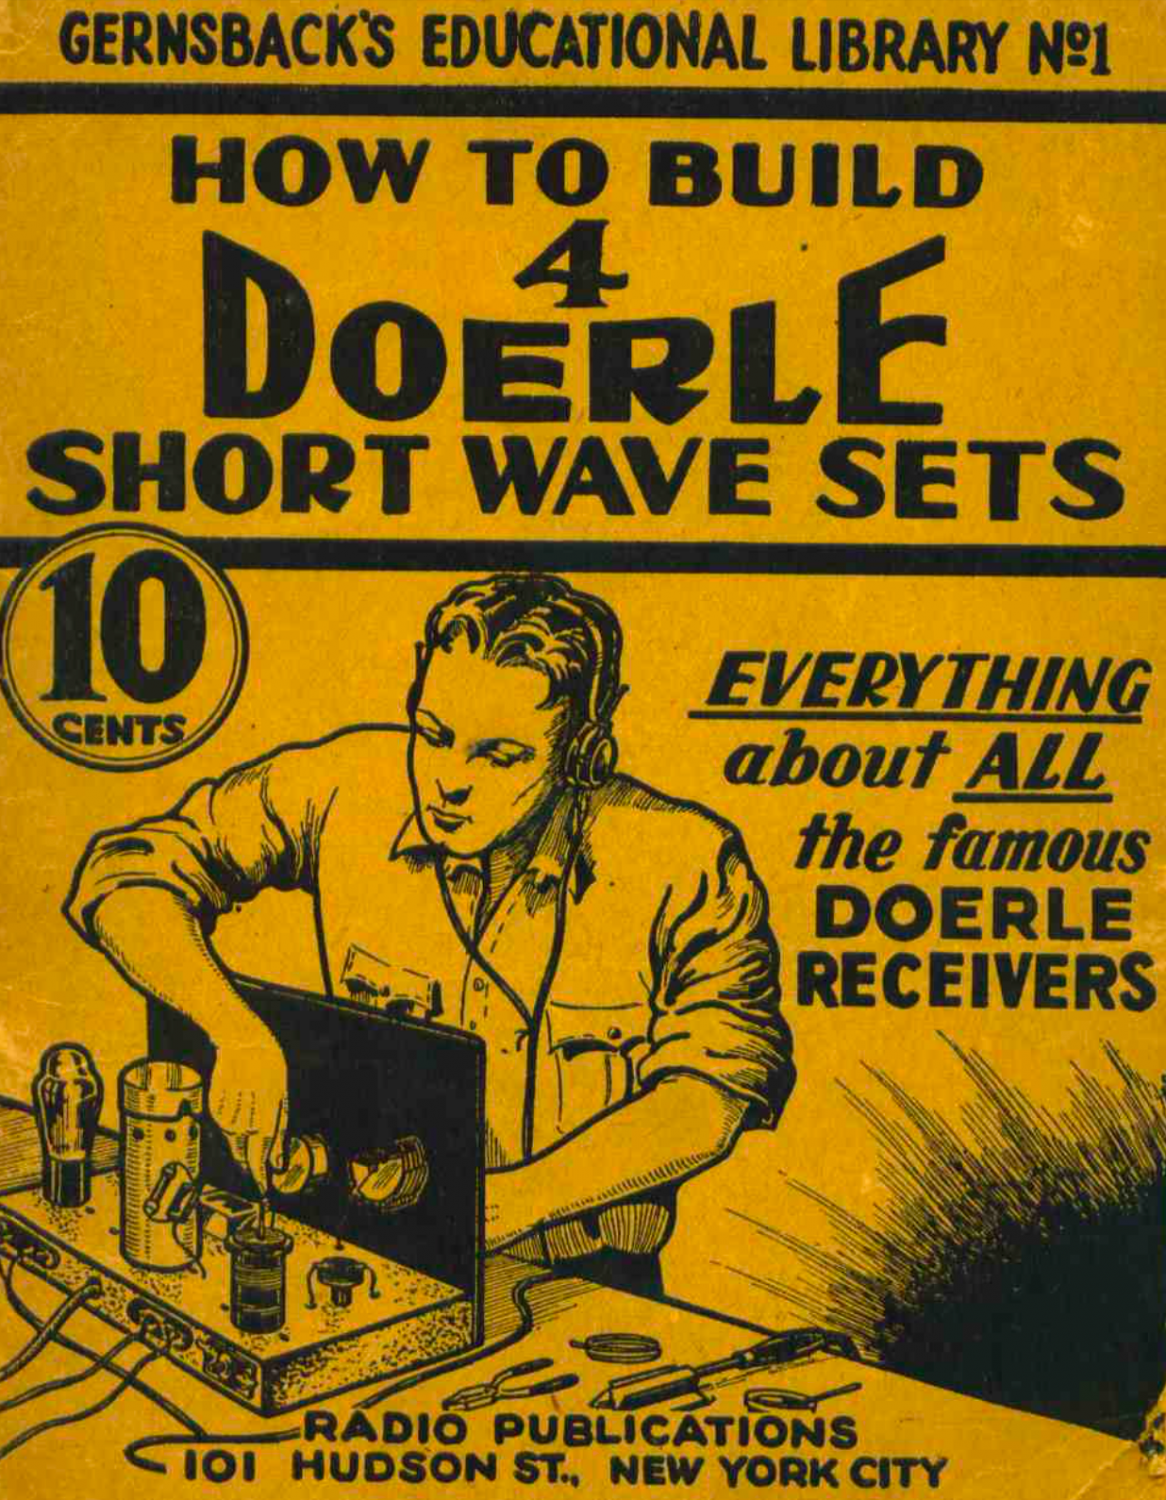 How to build 4 Doerle Shortwave Sets (1938)